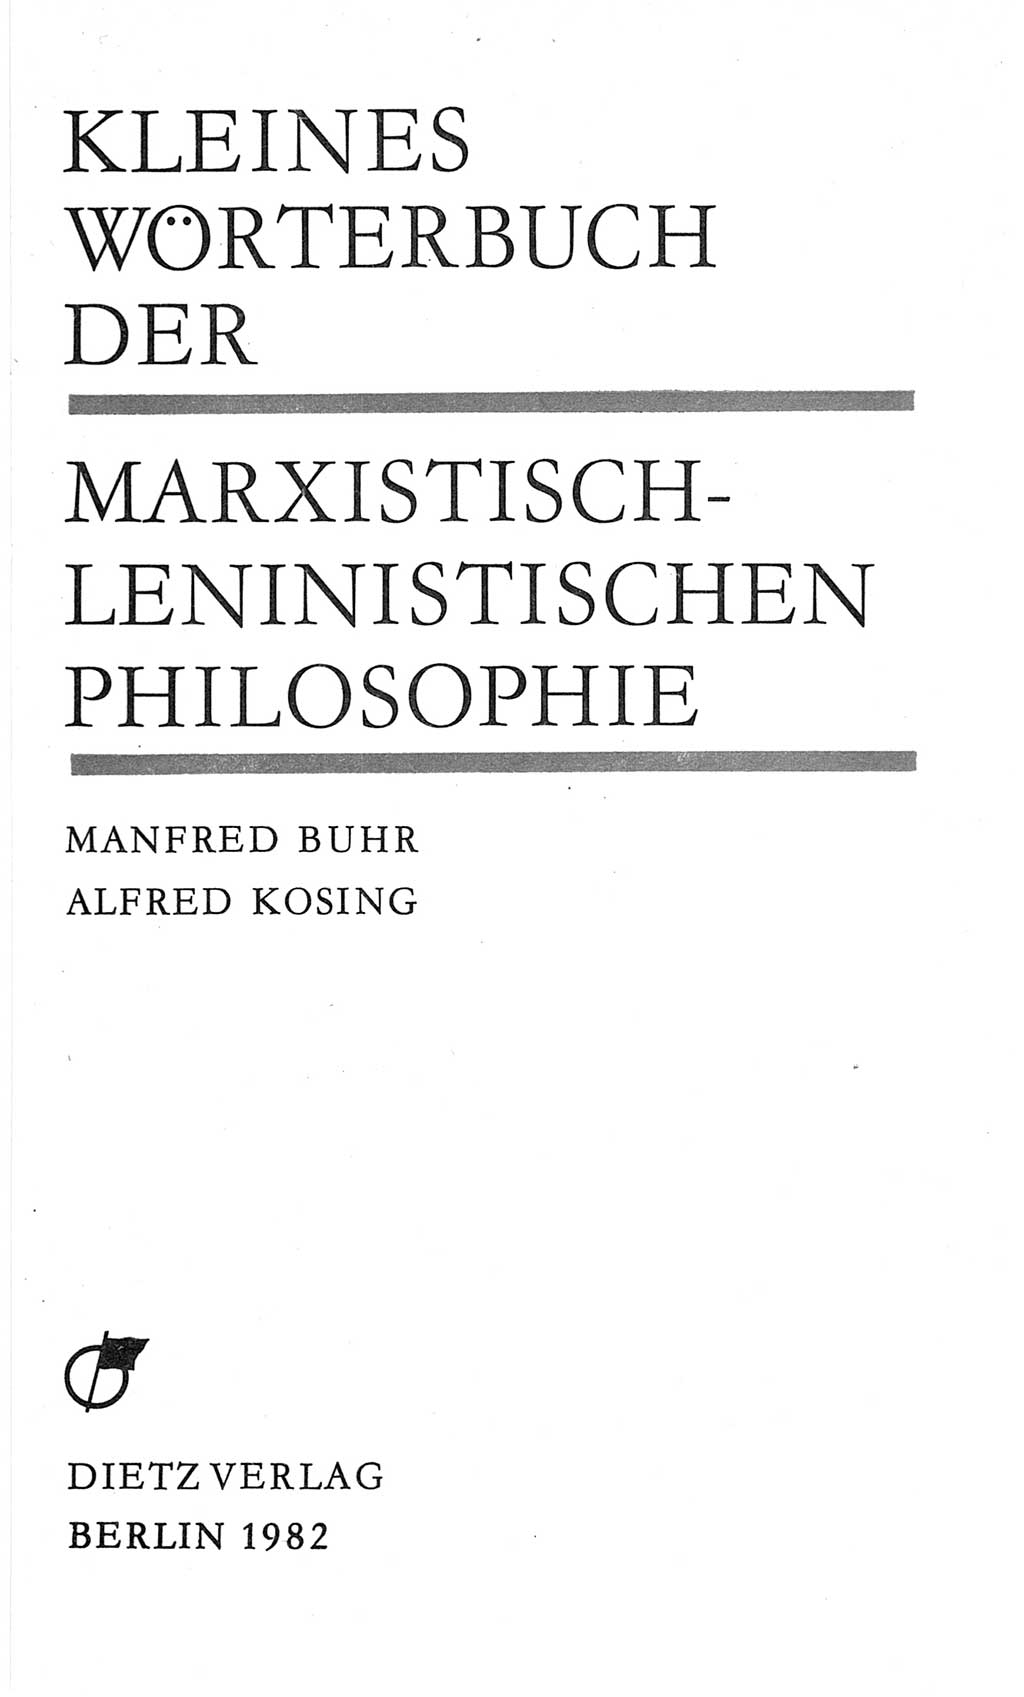 Kleines Wörterbuch der marxistisch-leninistischen Philosophie [Deutsche Demokratische Republik (DDR)] 1982, Seite 3 (Kl. Wb. ML Phil. DDR 1982, S. 3)